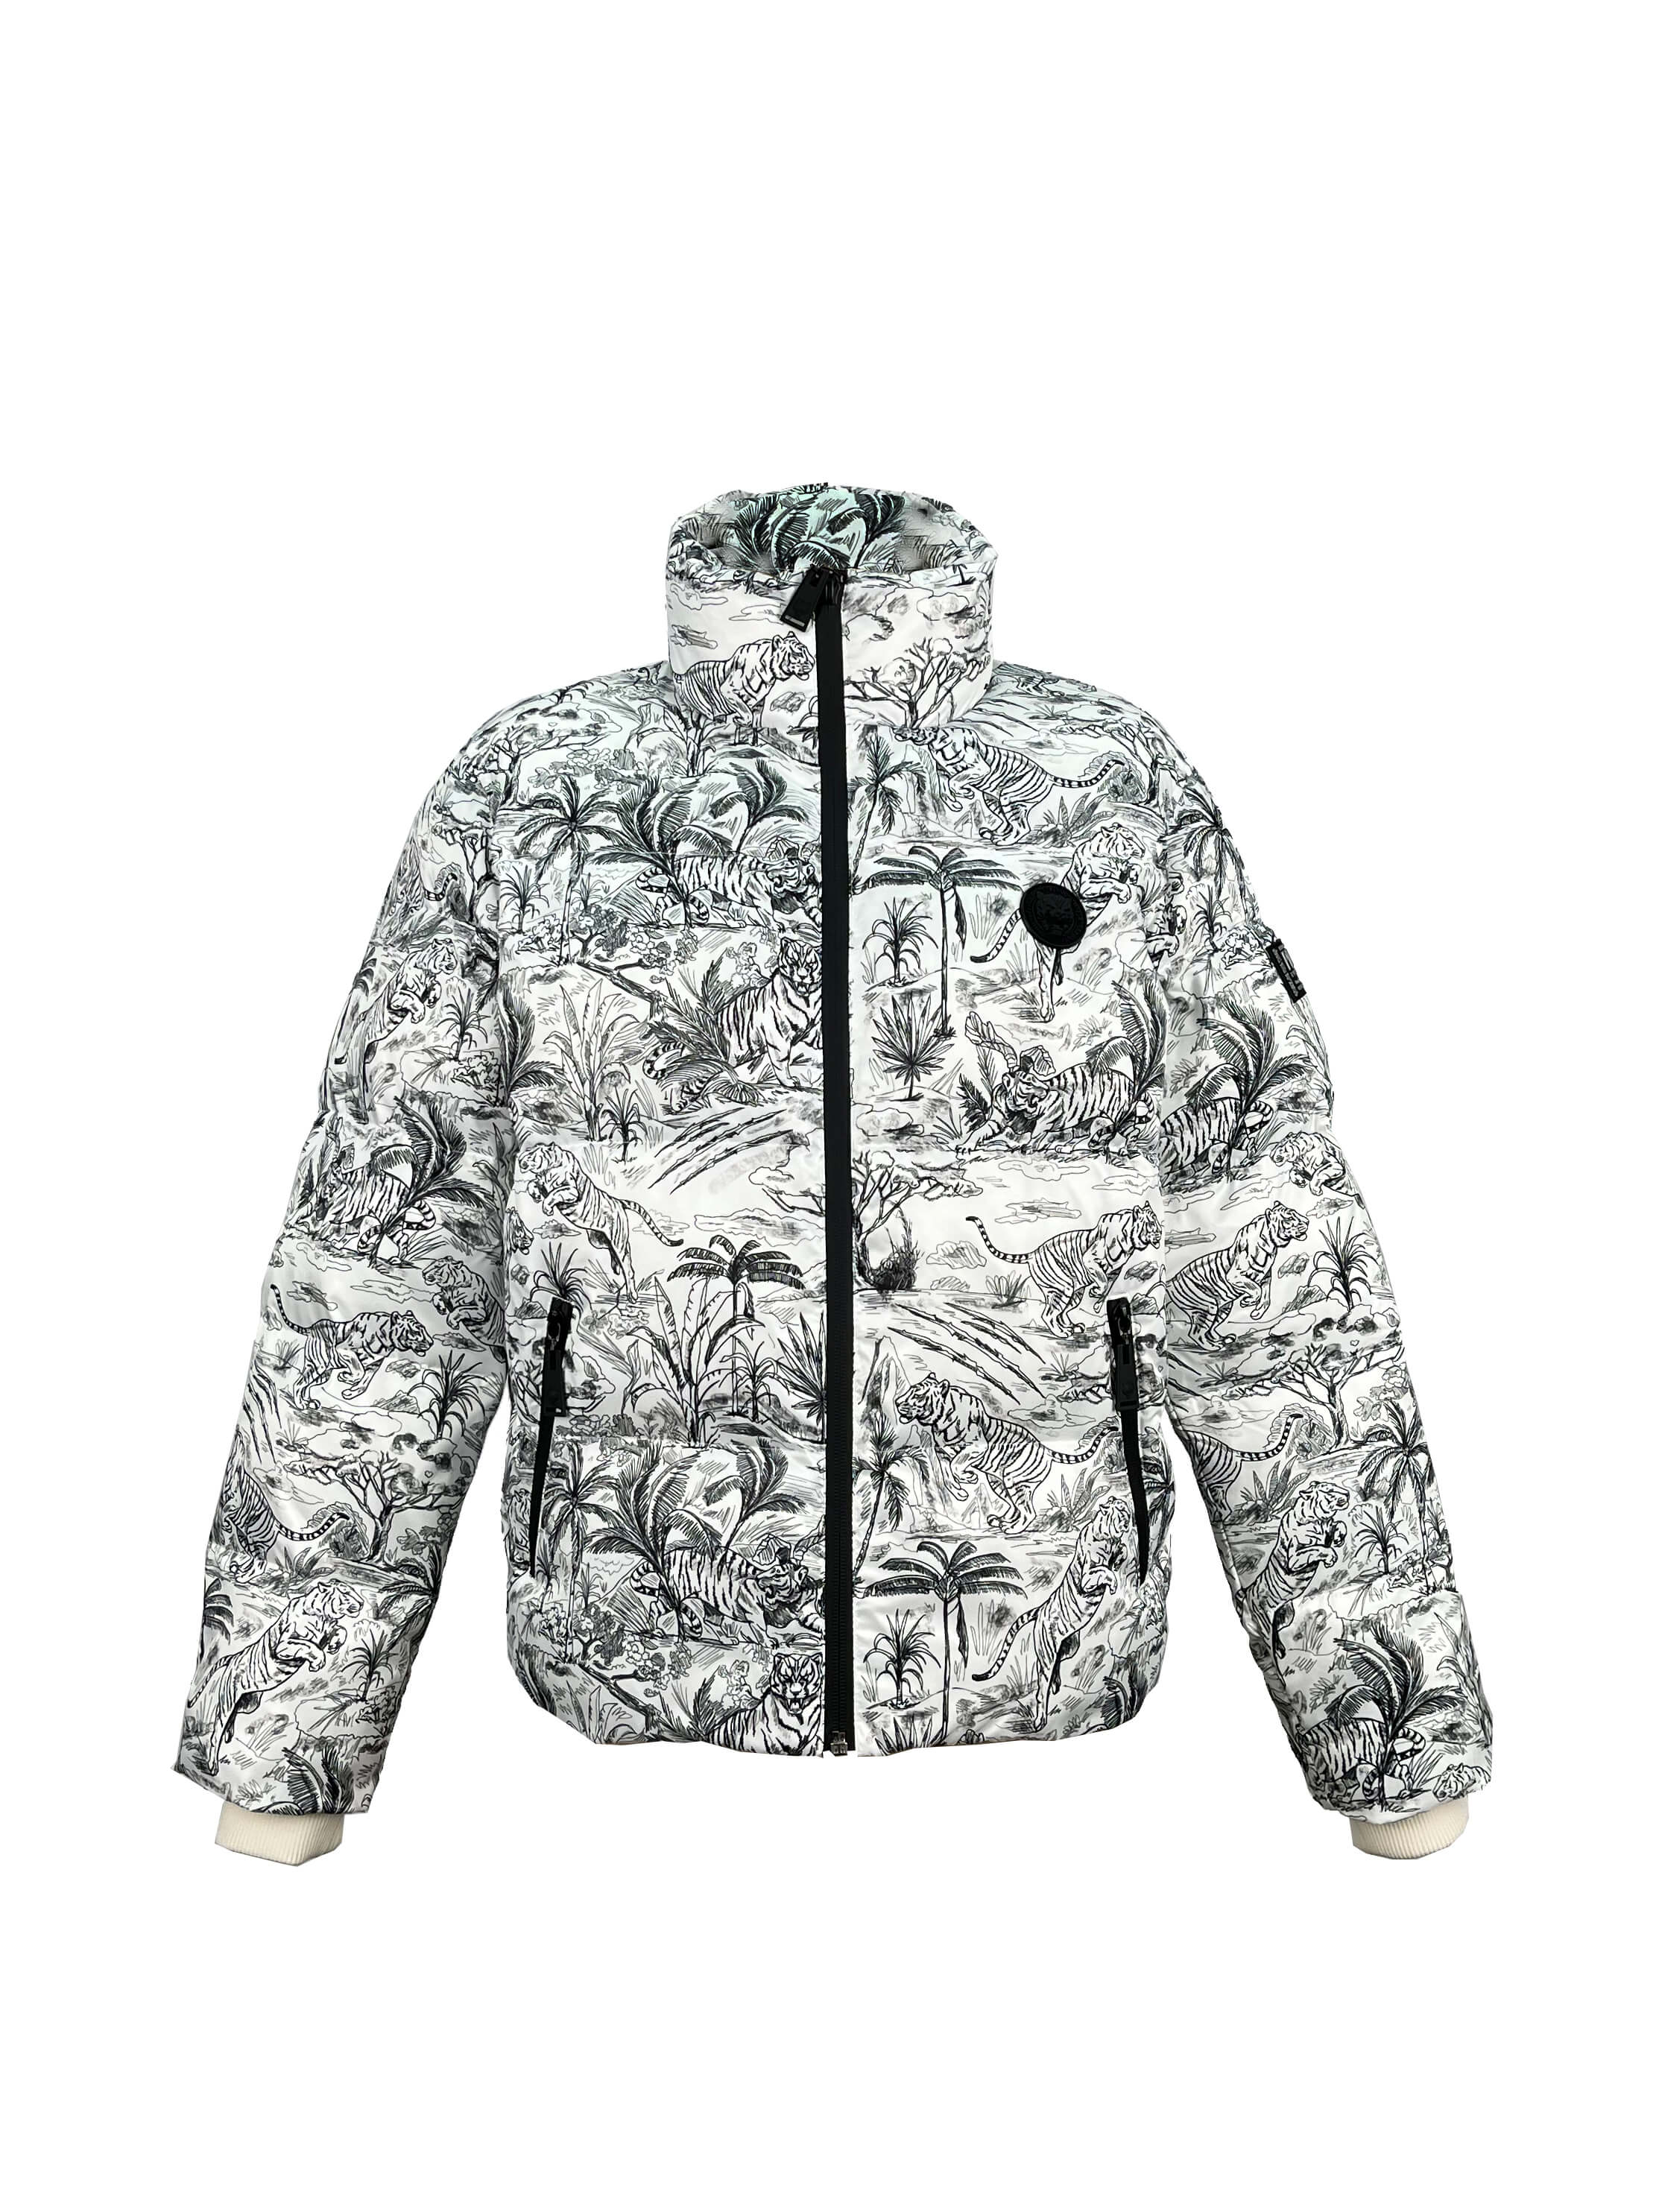 5.padded jacket (1)